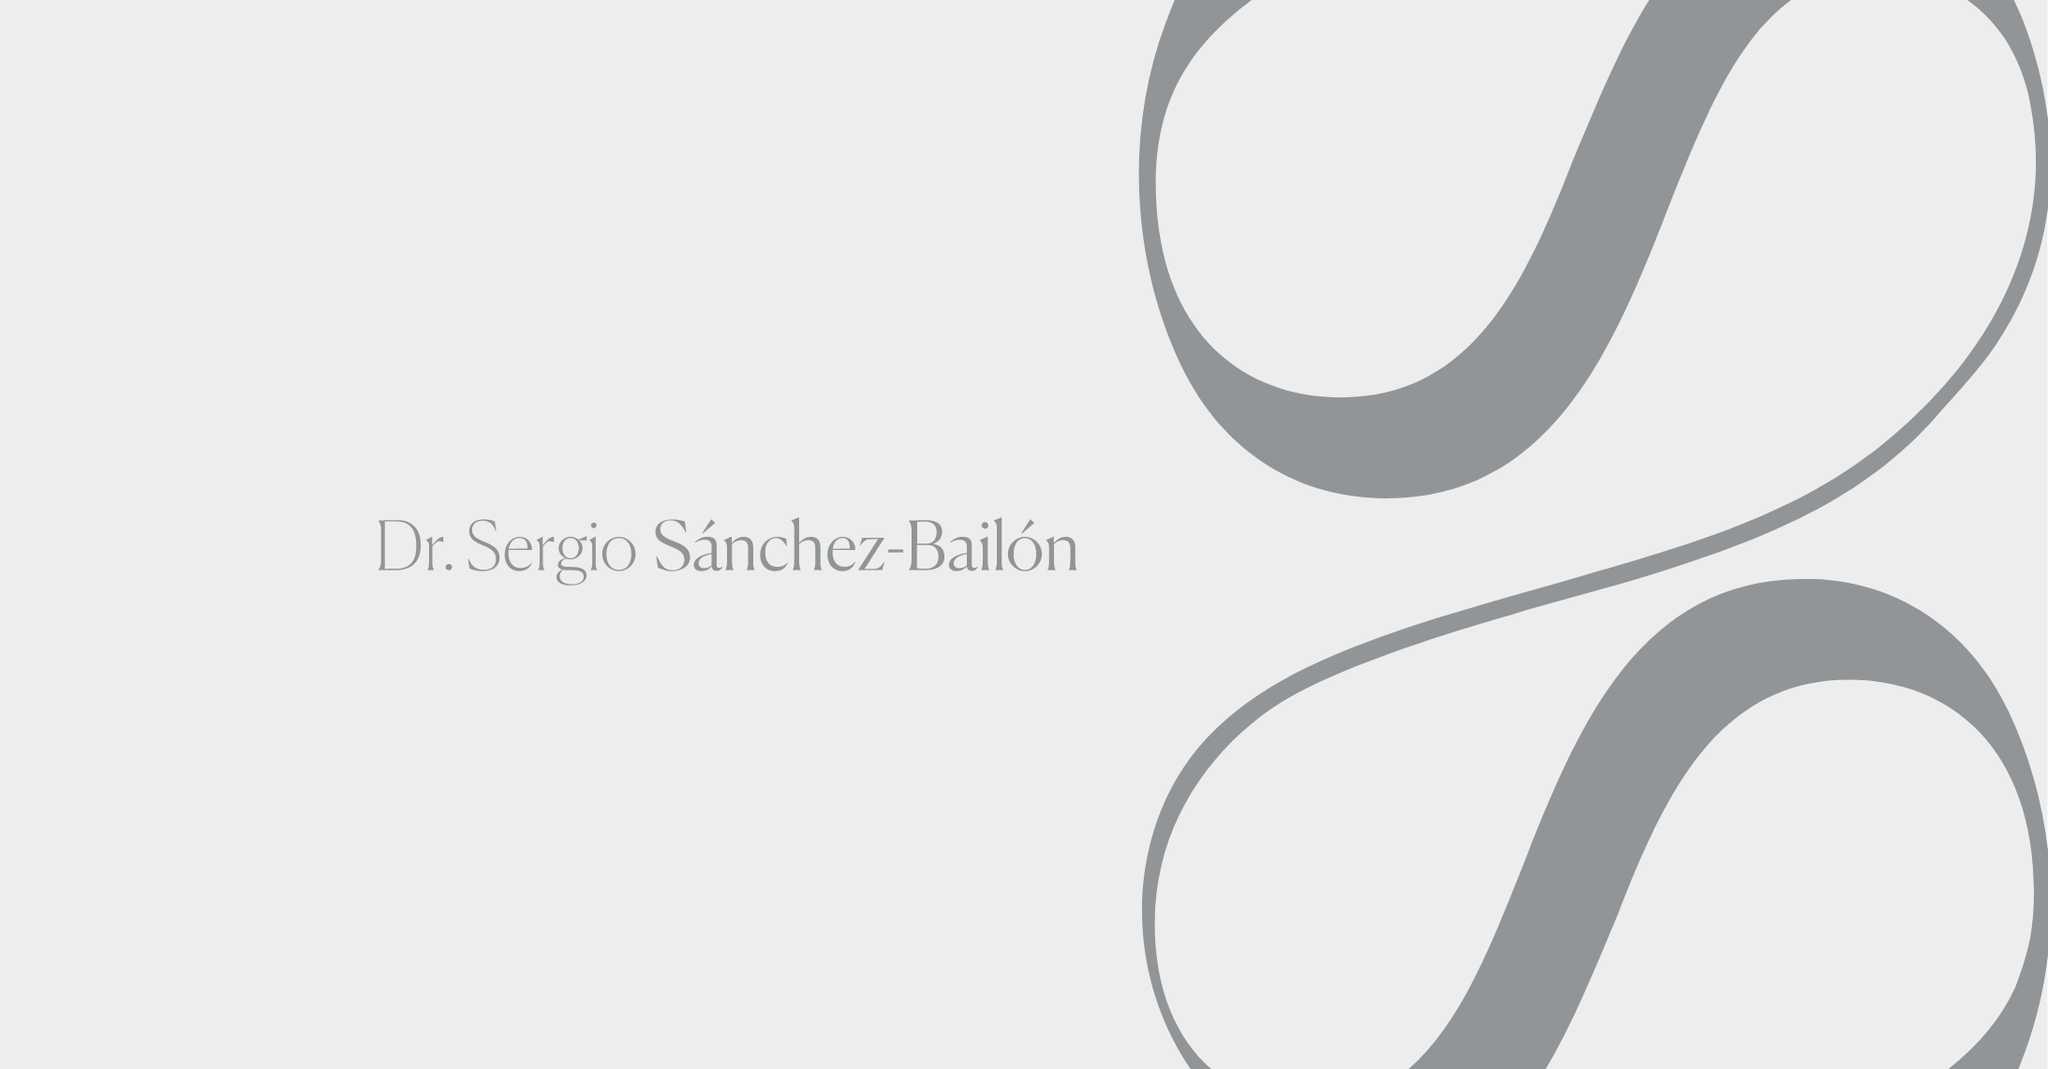 Dr. Sergio Sanchez-Bailon